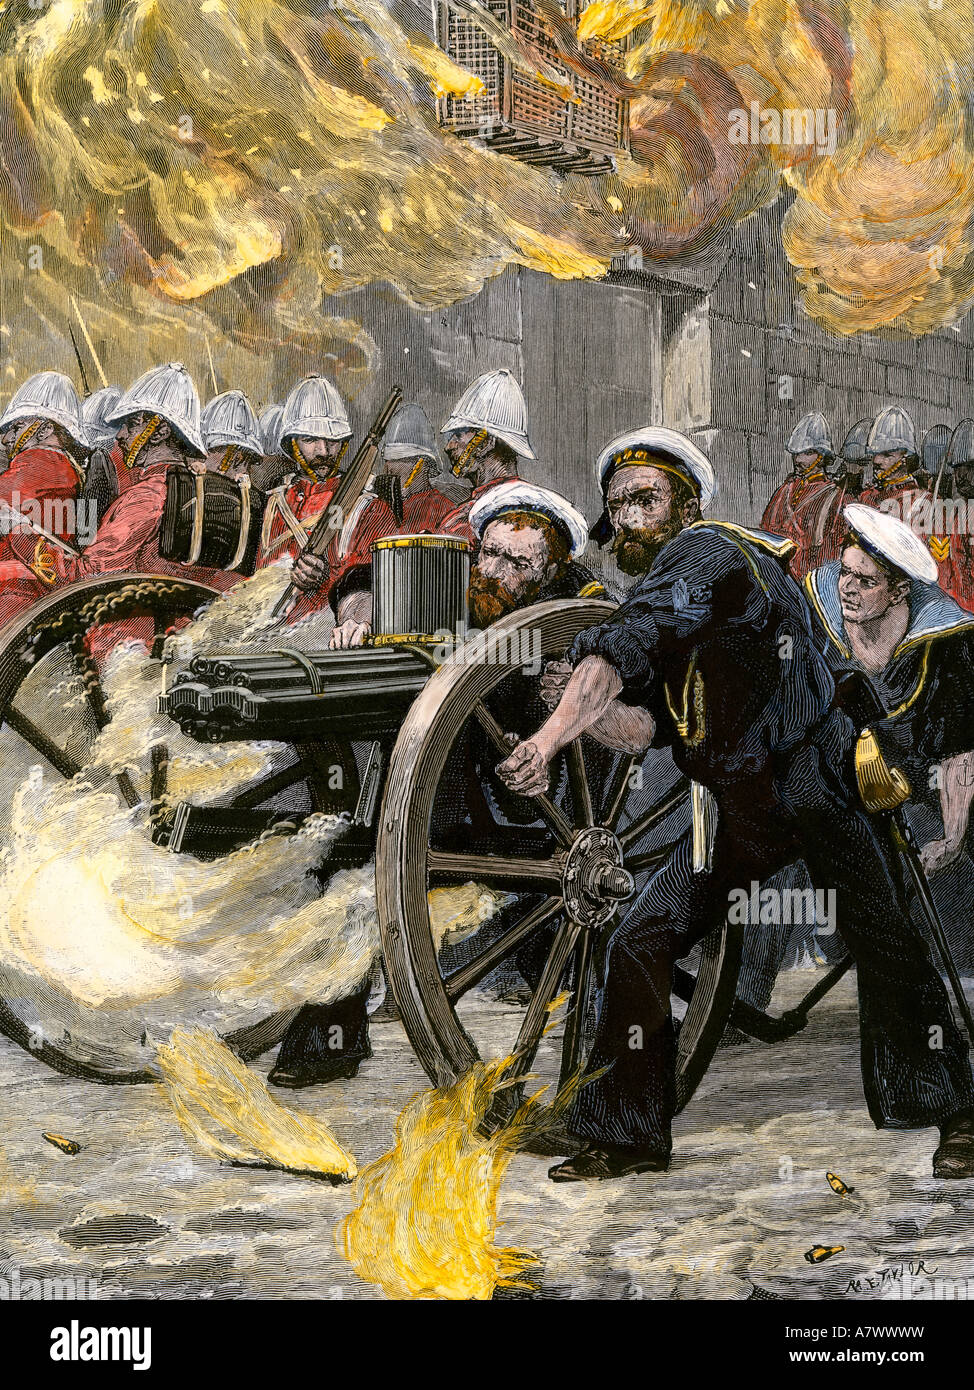 La brigade navale britannique à l'aide d'une mitrailleuse Gatling pour occuper Alexandrie Egypte 1882. À la main, gravure sur bois Banque D'Images